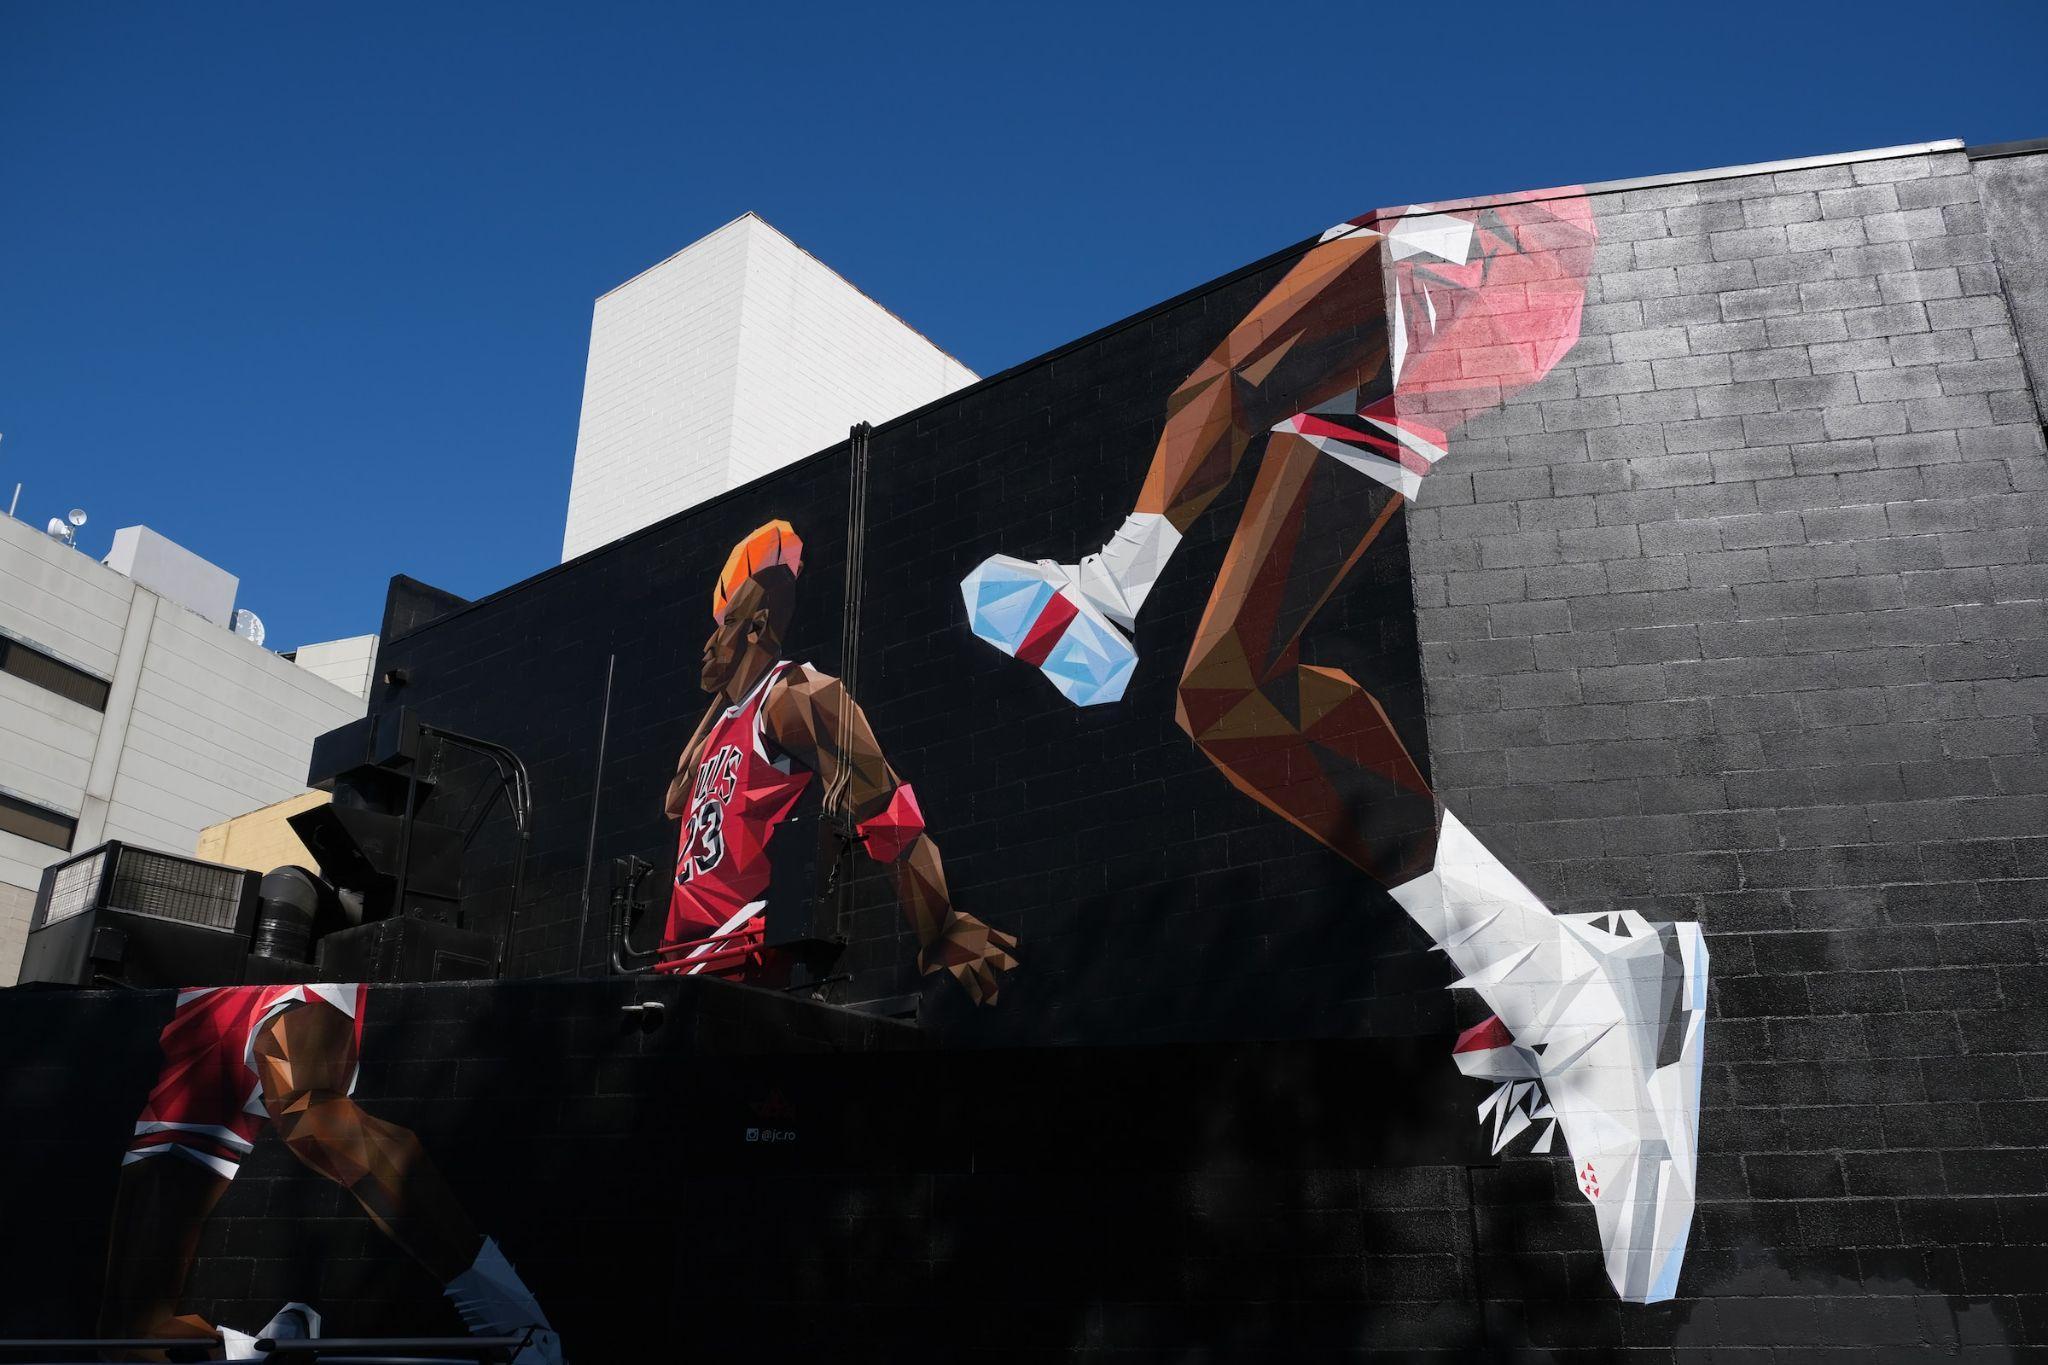 Portrait of Michael Jordan on a Wall